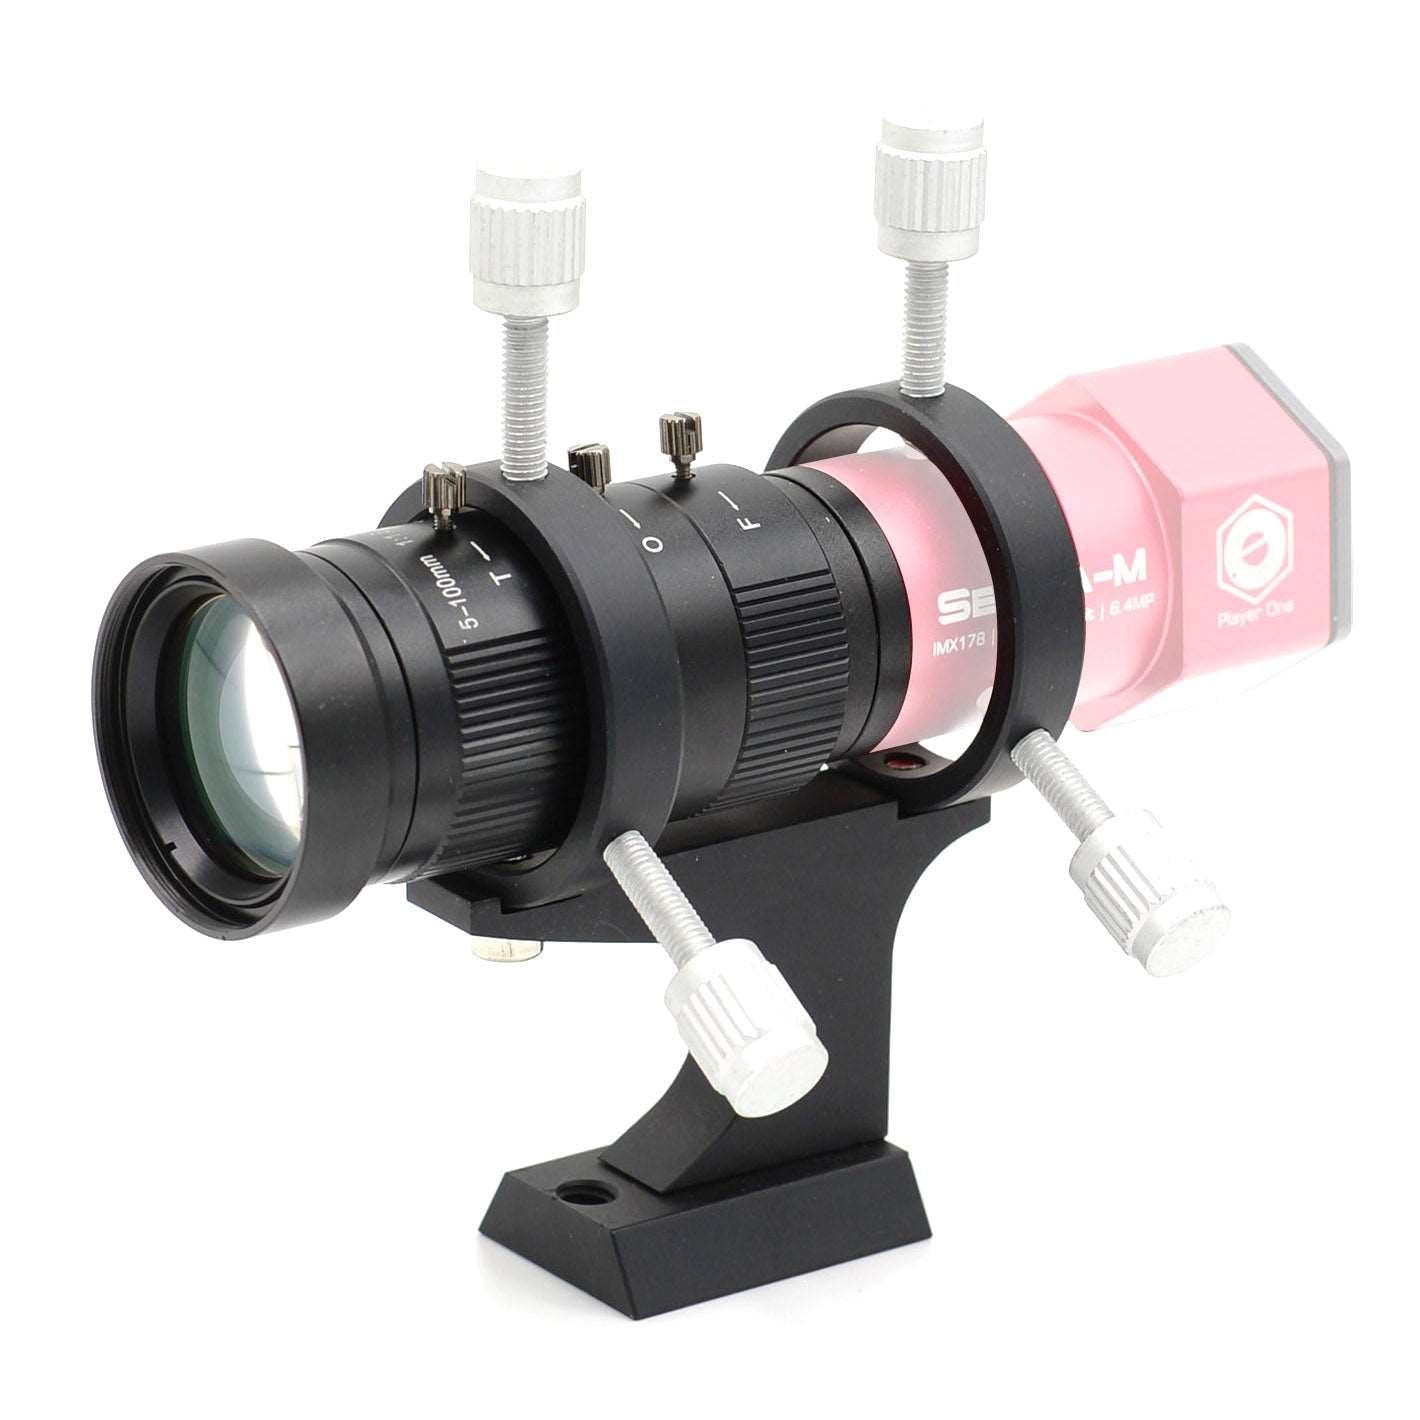 100mm Mini Guiding Set - Perfect for Guiding Cameras